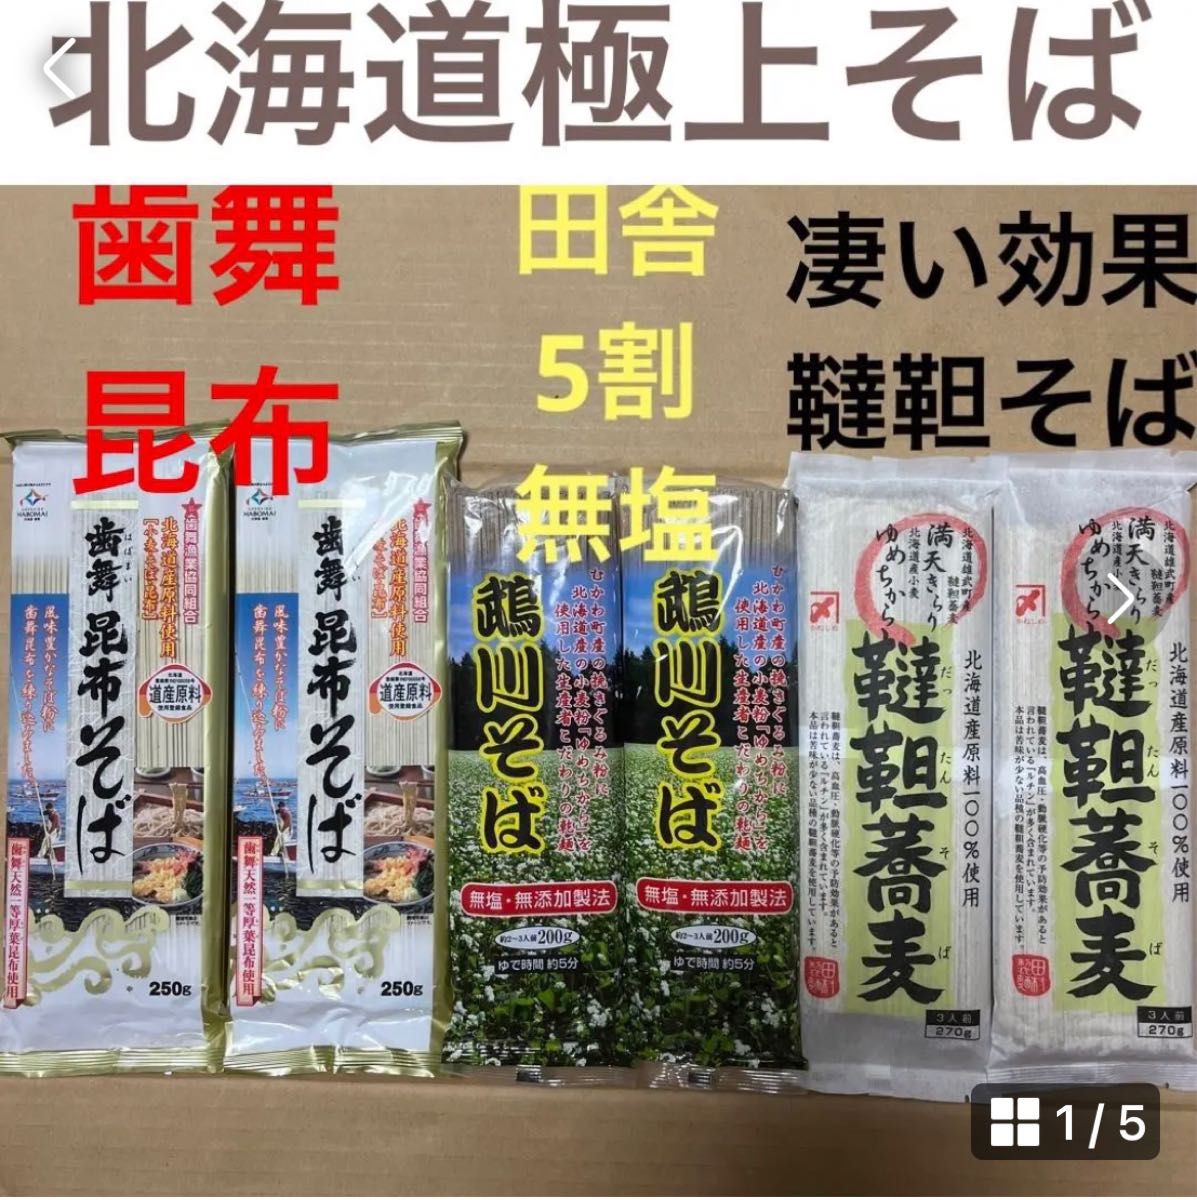 北海道原料100%極上そば 蕎麦ソバ3種食べ比べ 乾麺サプリプロテイン